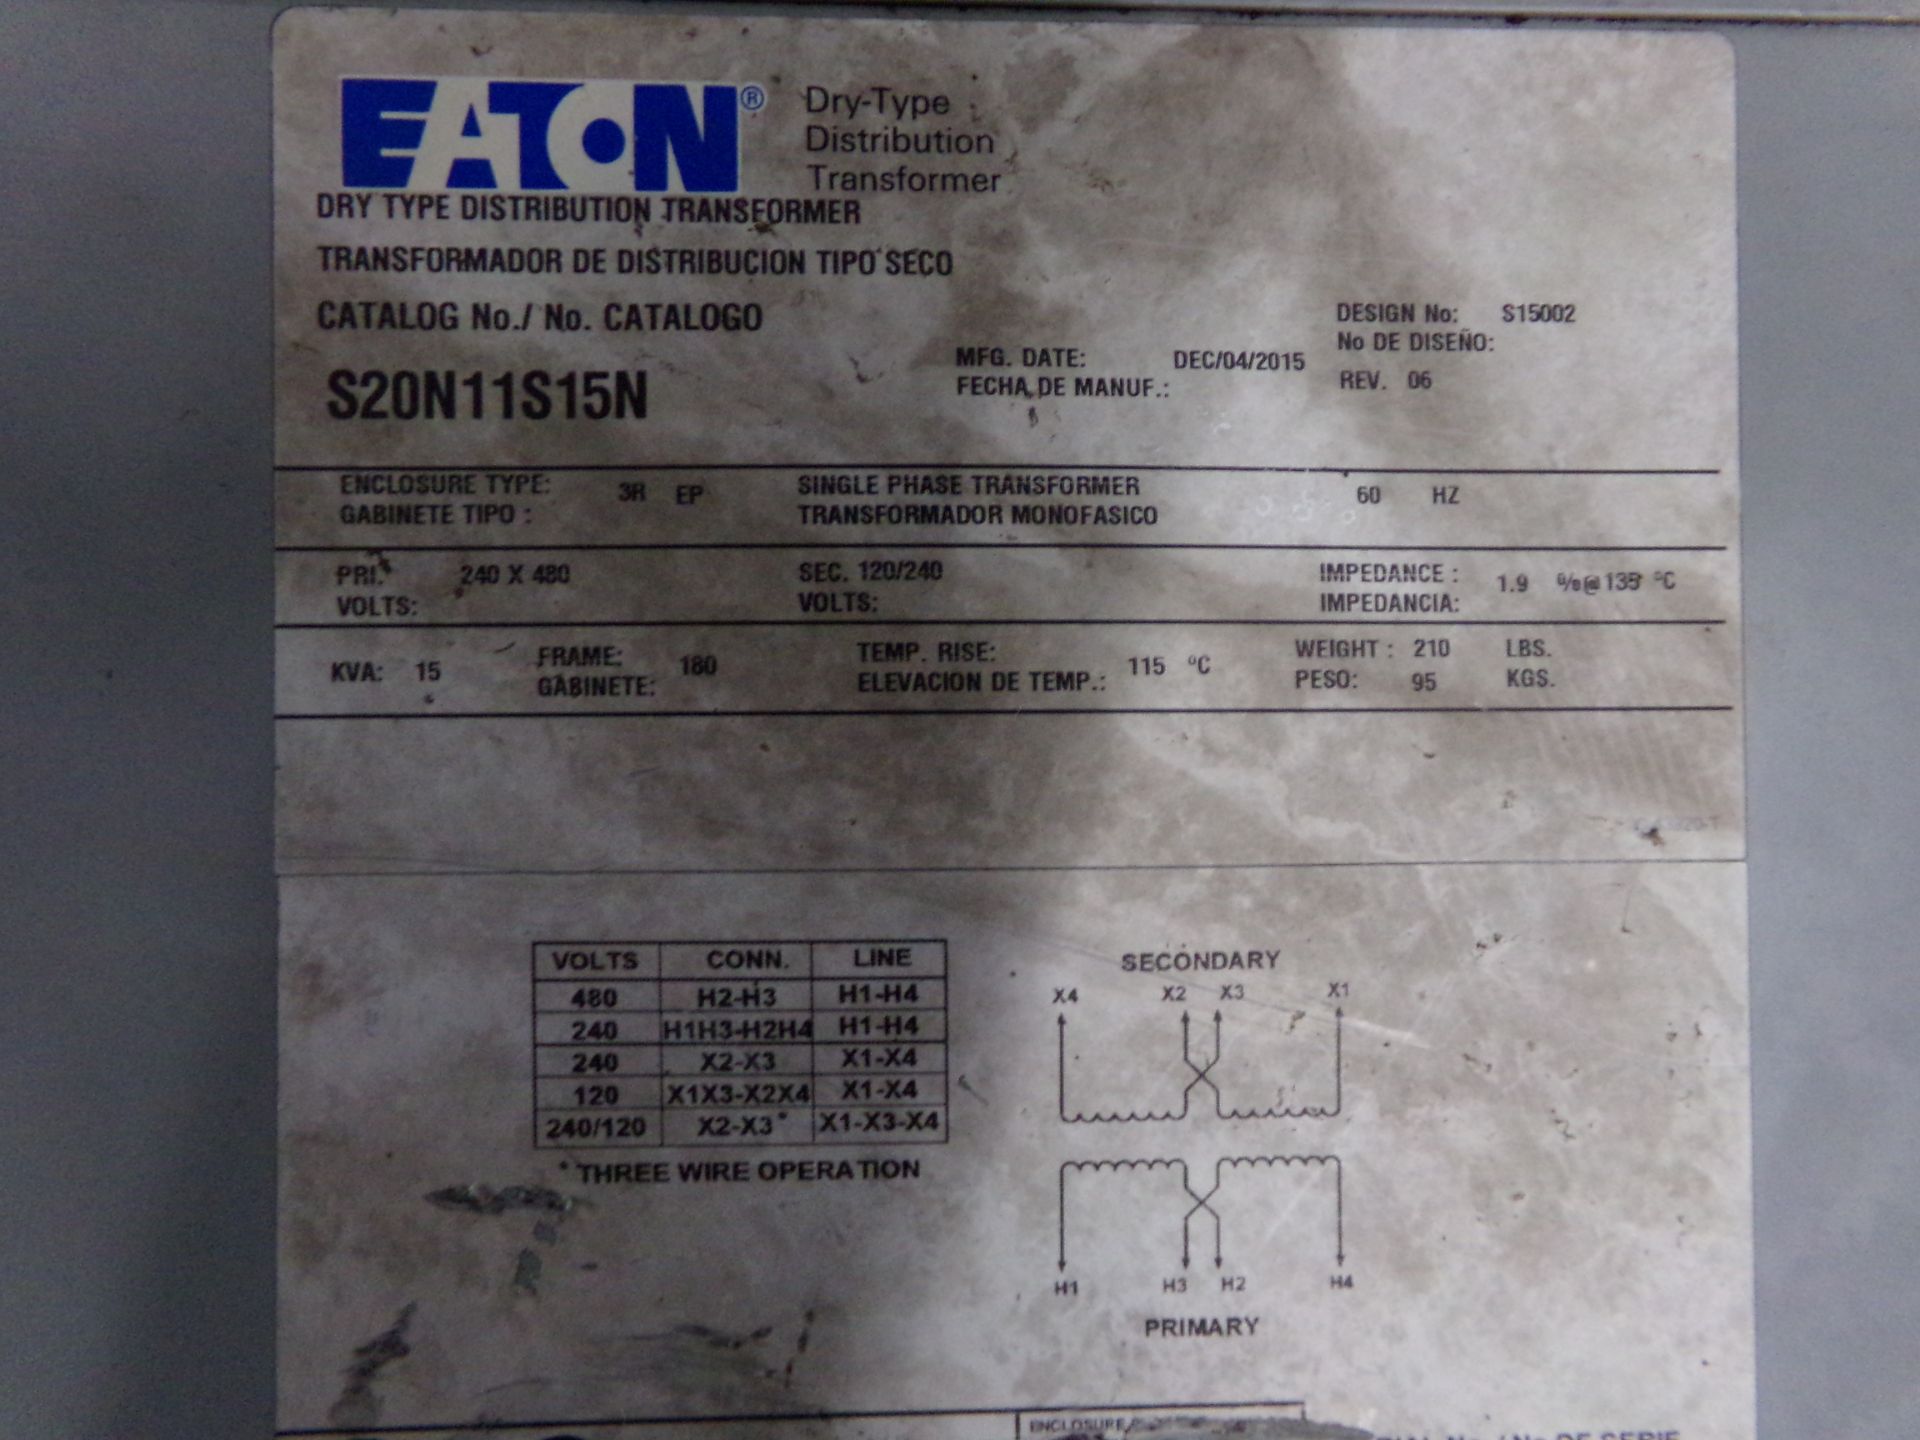 eaton transformer catalog number S20N11S15N 15kva 240-480v 60 hz - Image 4 of 7